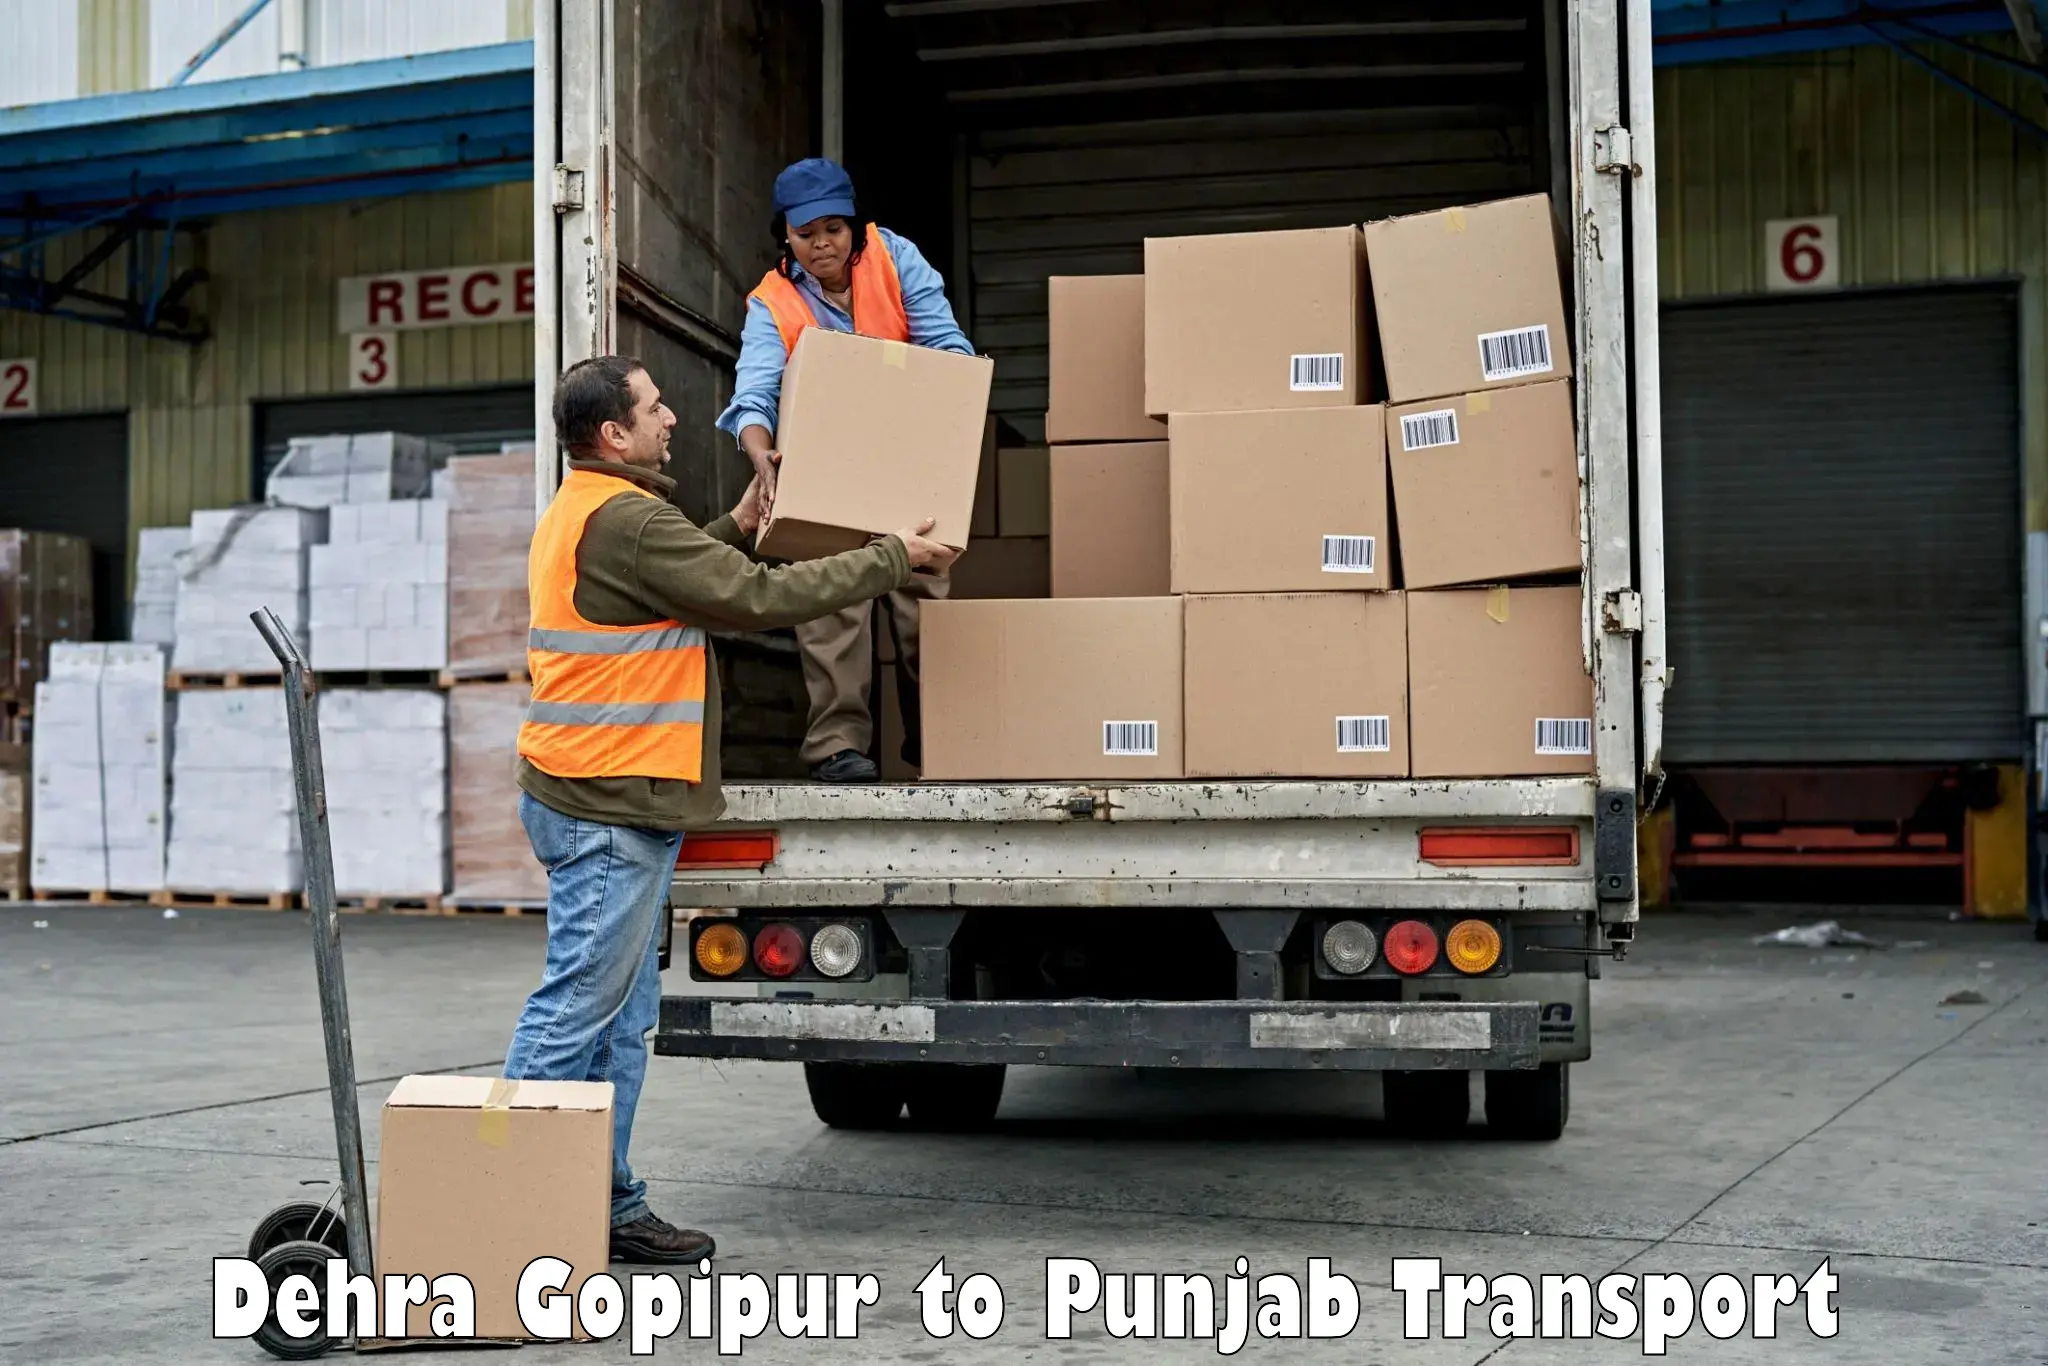 Transport in sharing Dehra Gopipur to Rupnagar